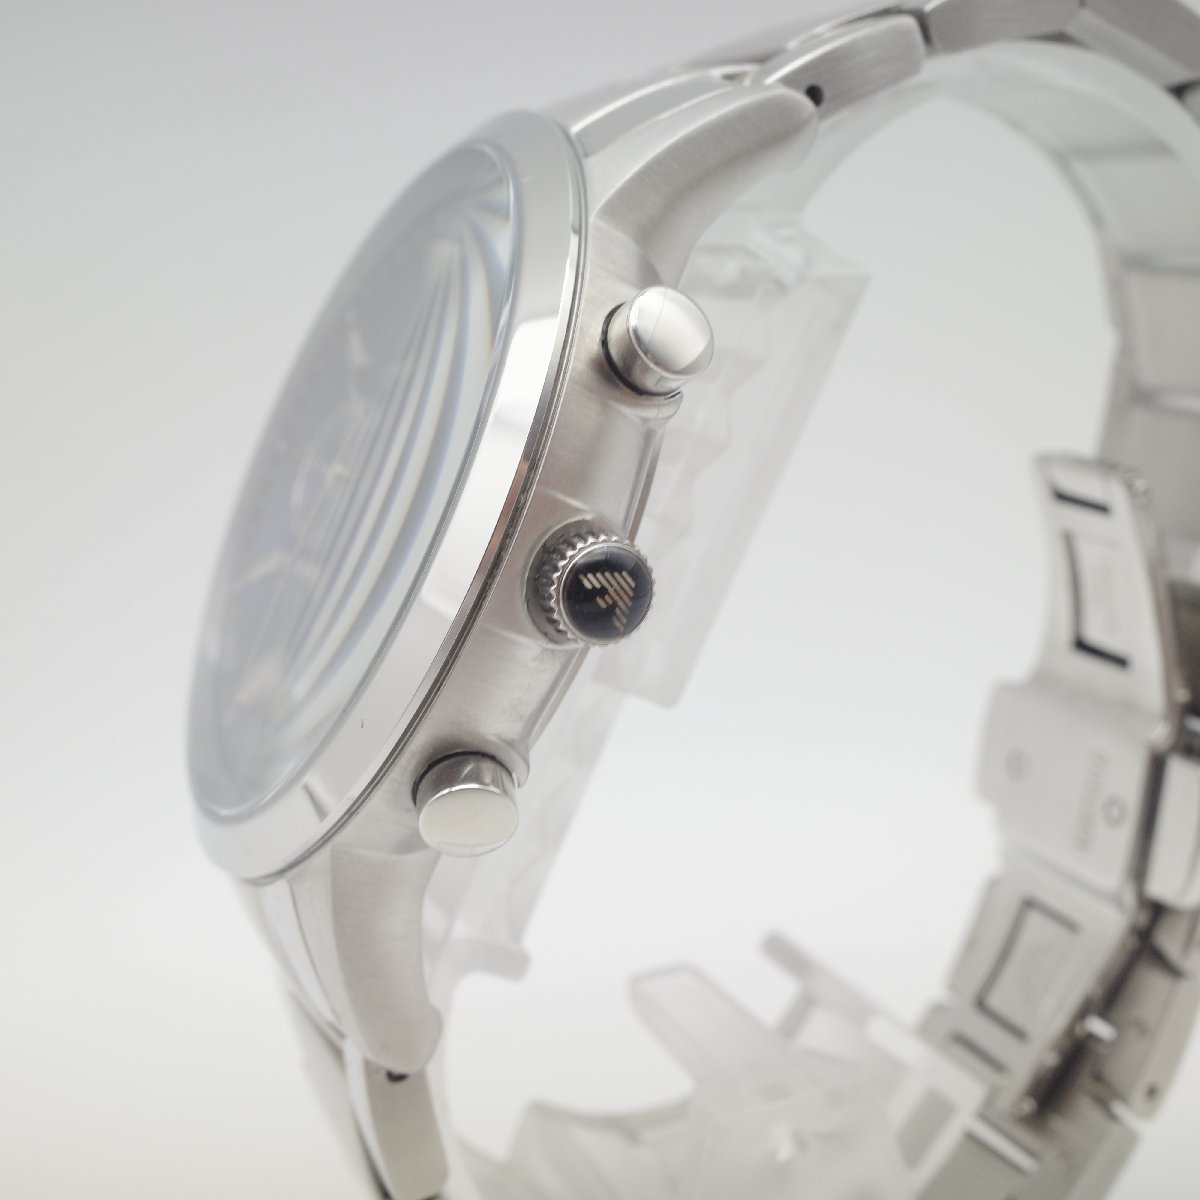 0203〇/エンポリオアルマーニ 腕時計 AR2448 アナログ クオーツ式 クロノグラフ 50m防水 メンズ シルバー_画像3